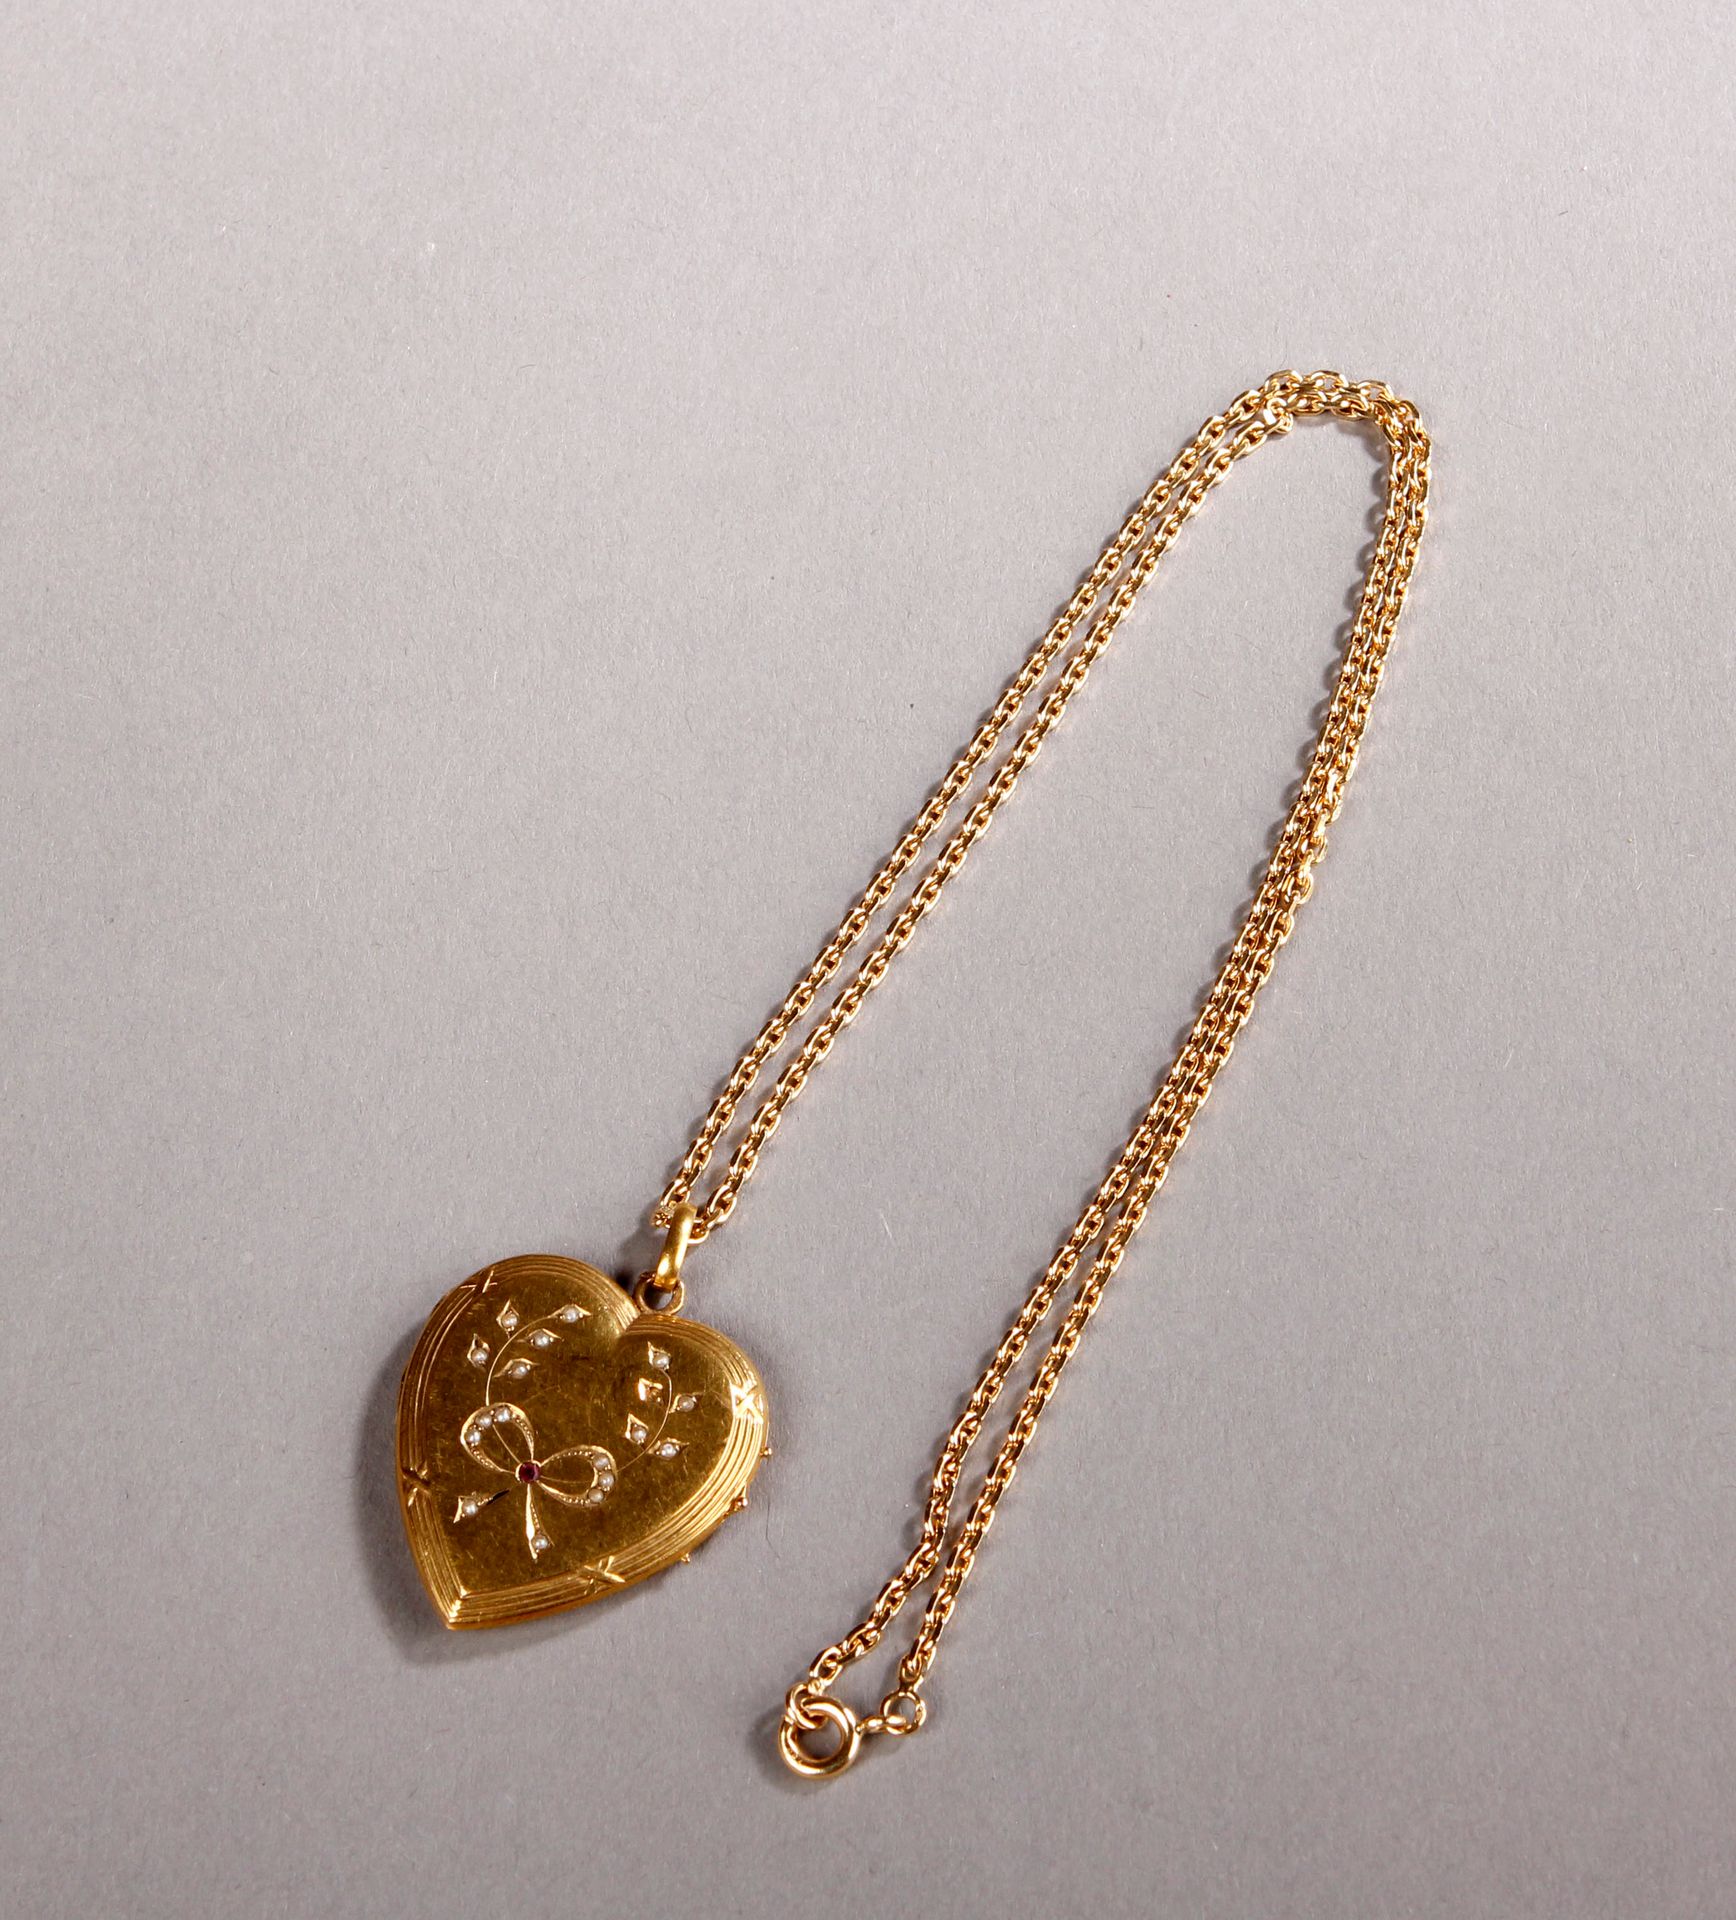 Null Ciondolo a forma di cuore con catena in oro giallo.
Peso: 14,9 g